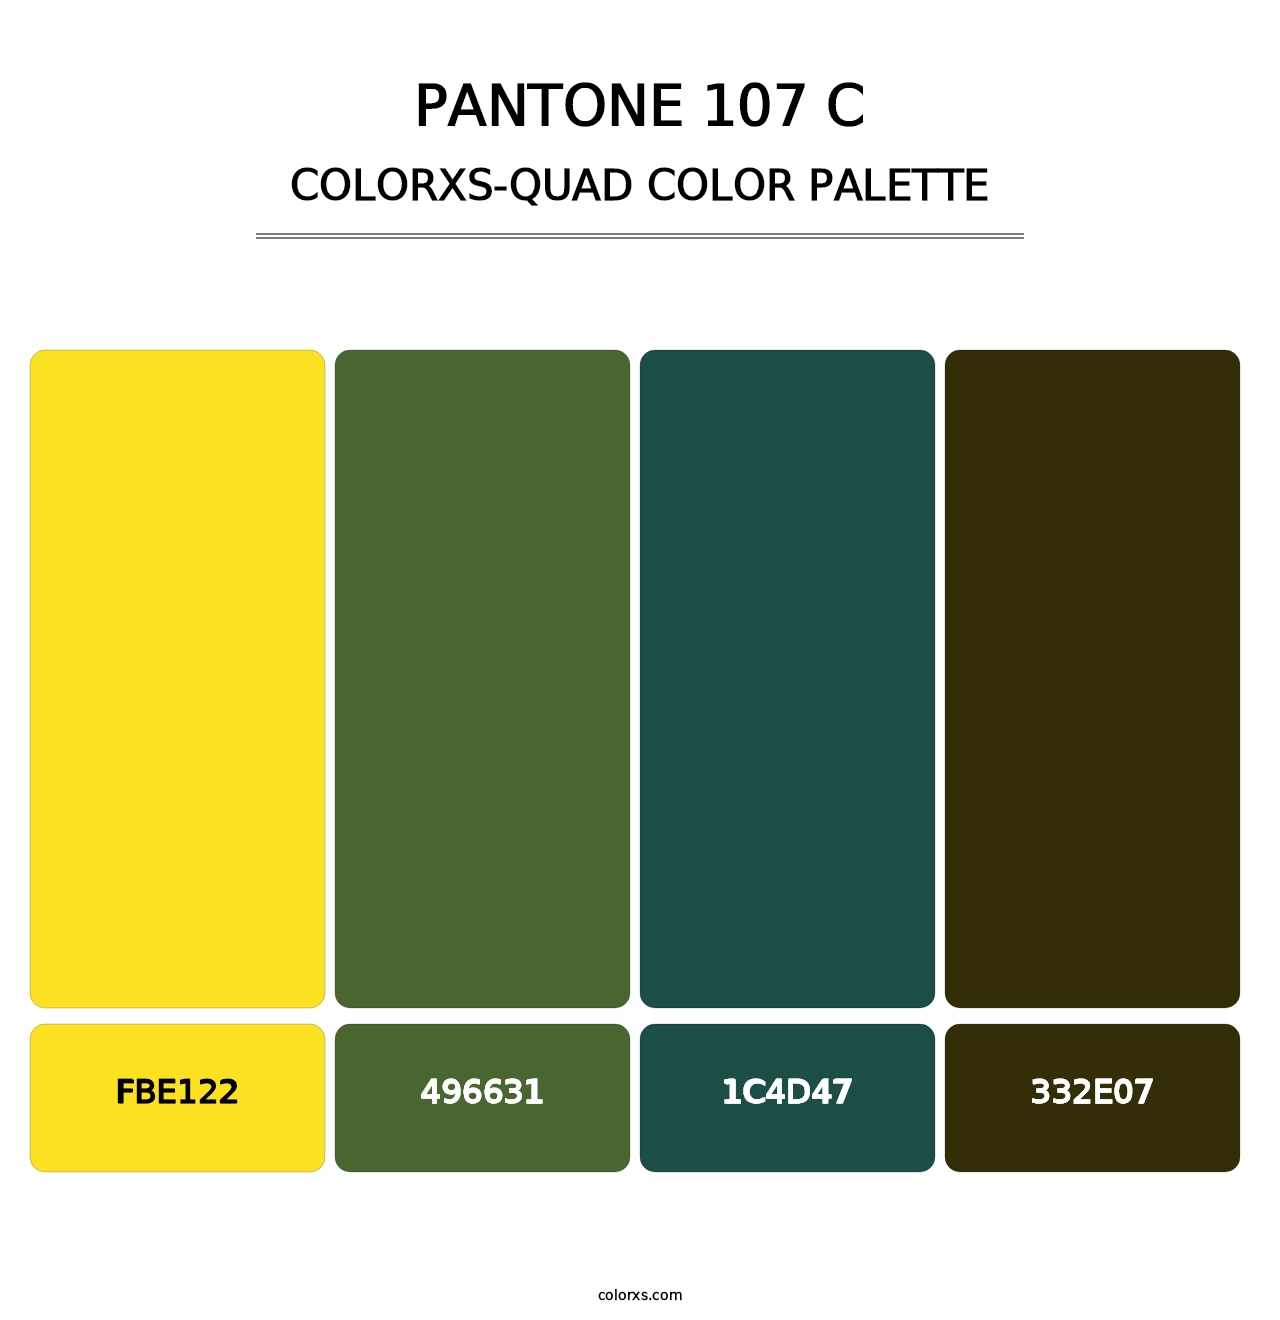 PANTONE 107 C - Colorxs Quad Palette